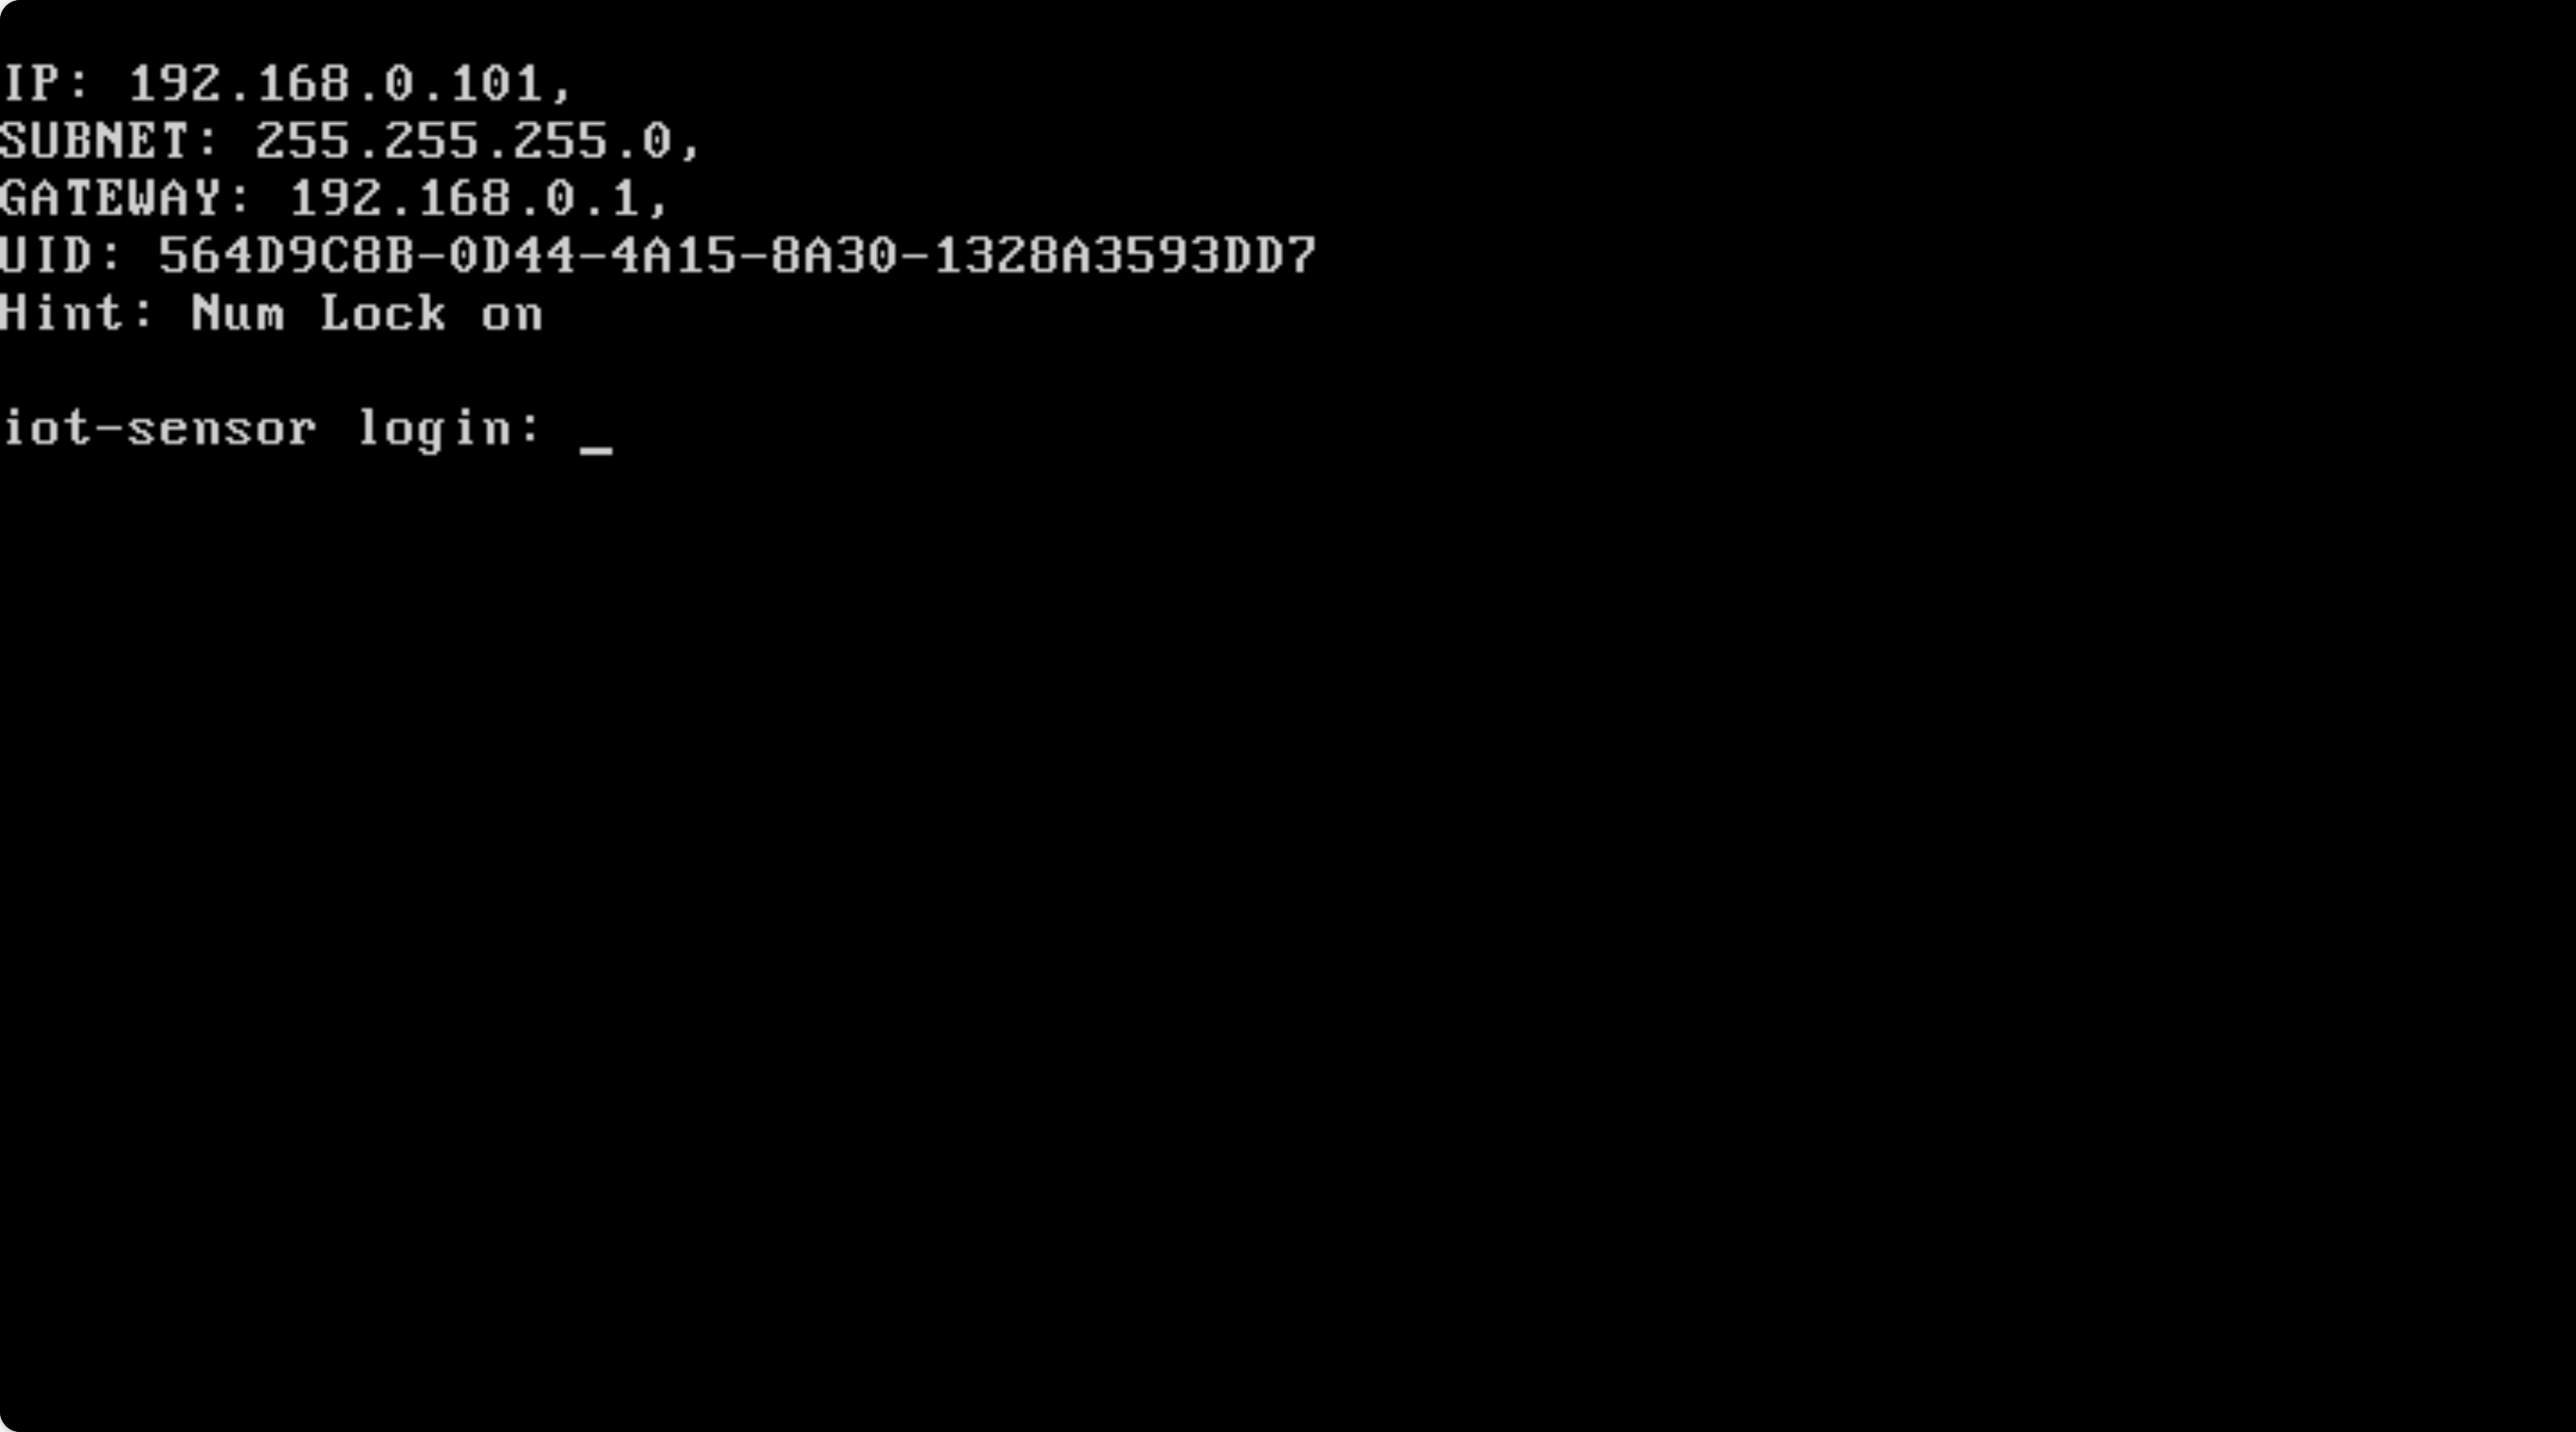 Captura de tela do prompt de login final no final da configuração inicial da CLI.